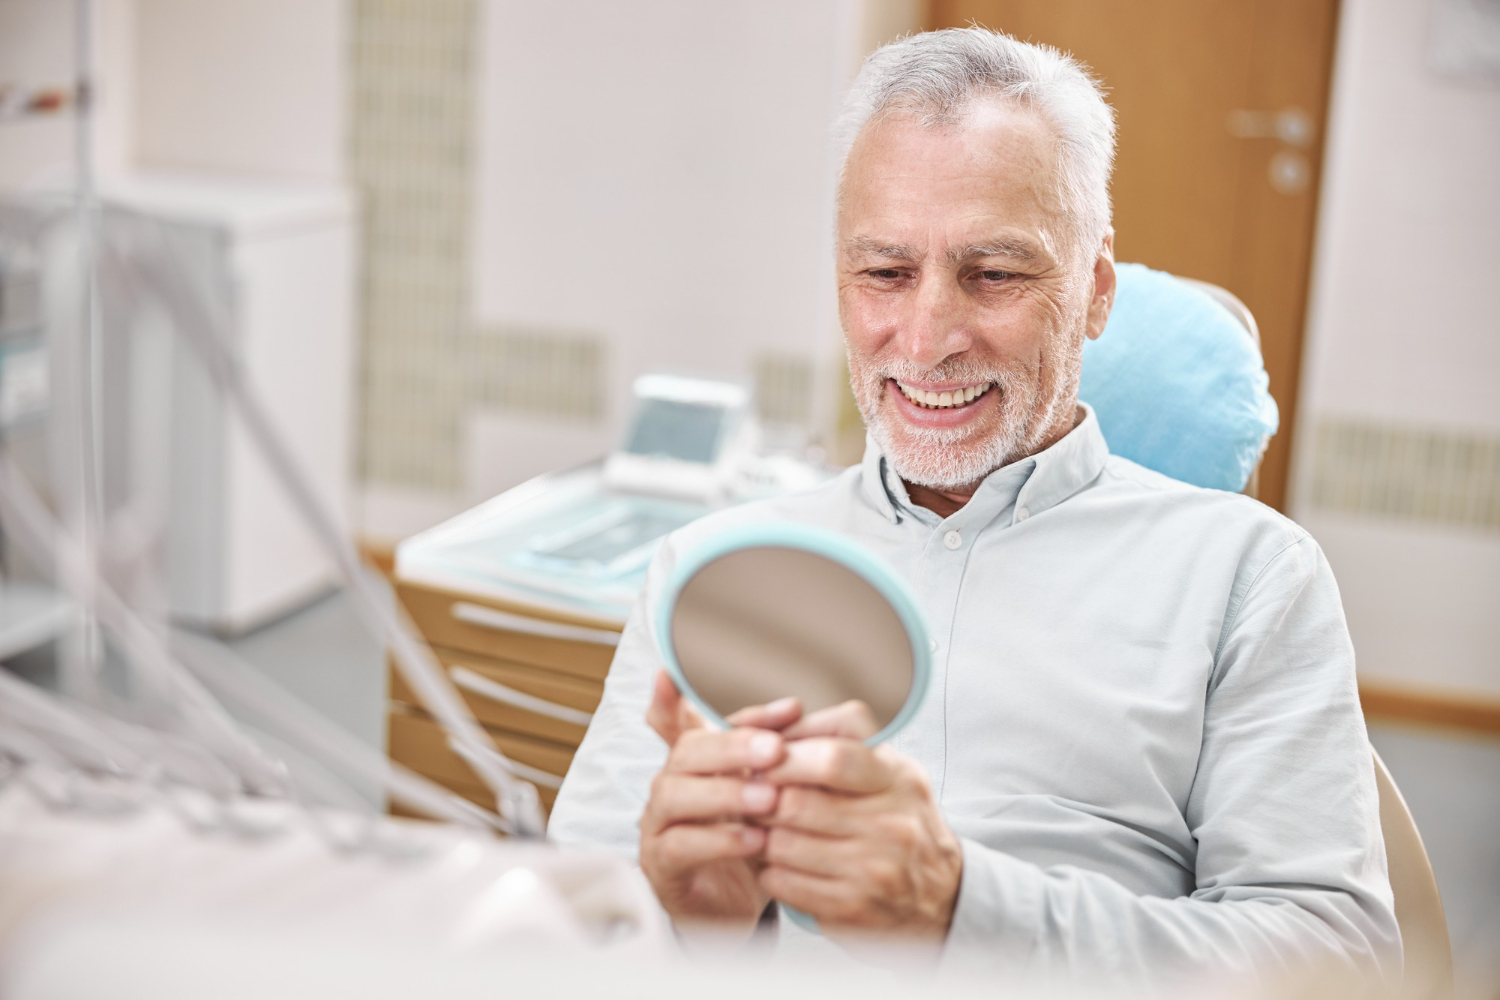 Dental Implants for Seniors: Benefits